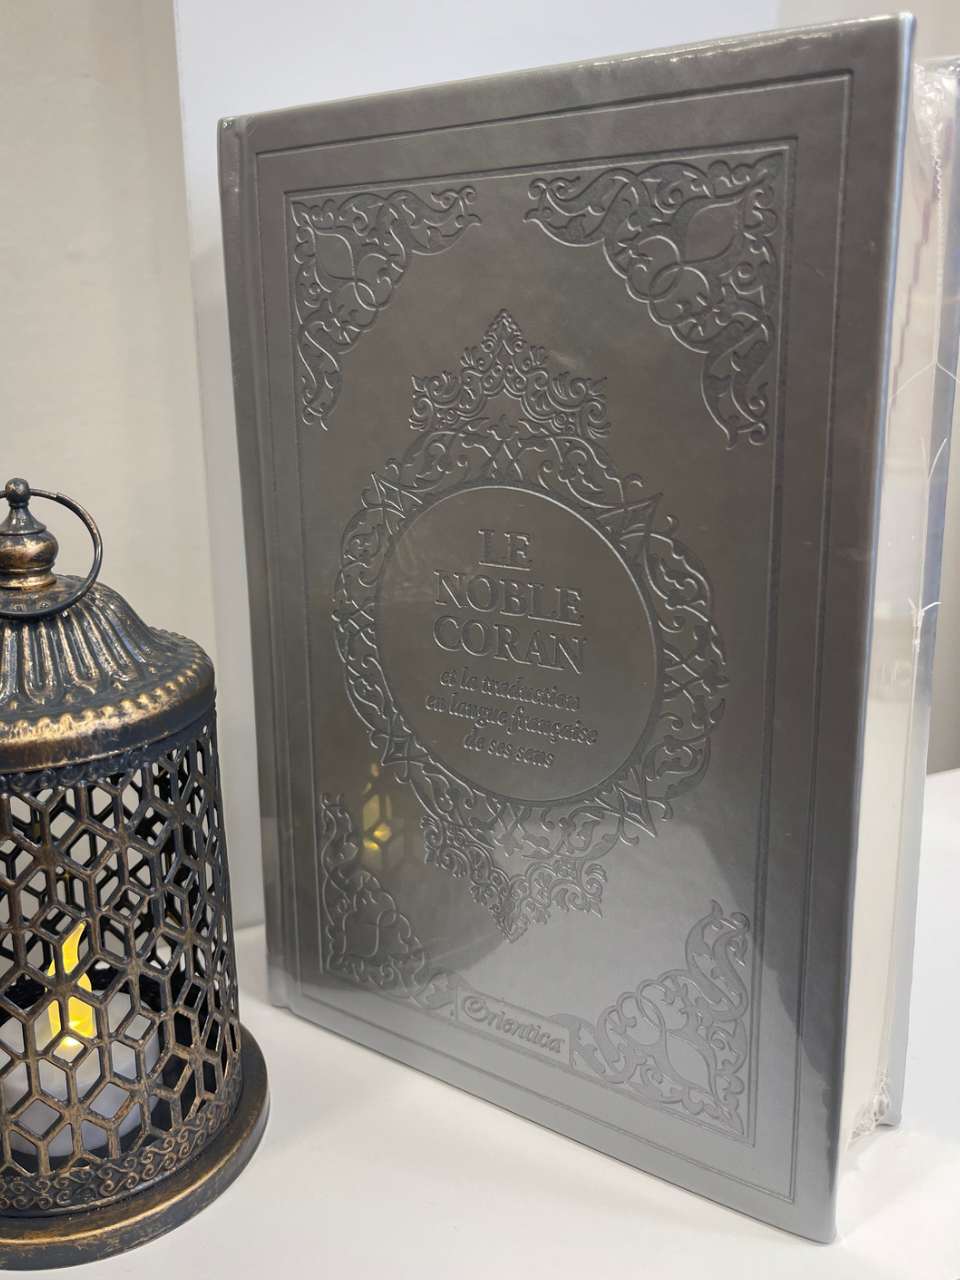 Le Noble Coran et la traduction en langue française de ses sens (bilingue français/arabe) - Edition de luxe couverture cartonnée en cuir